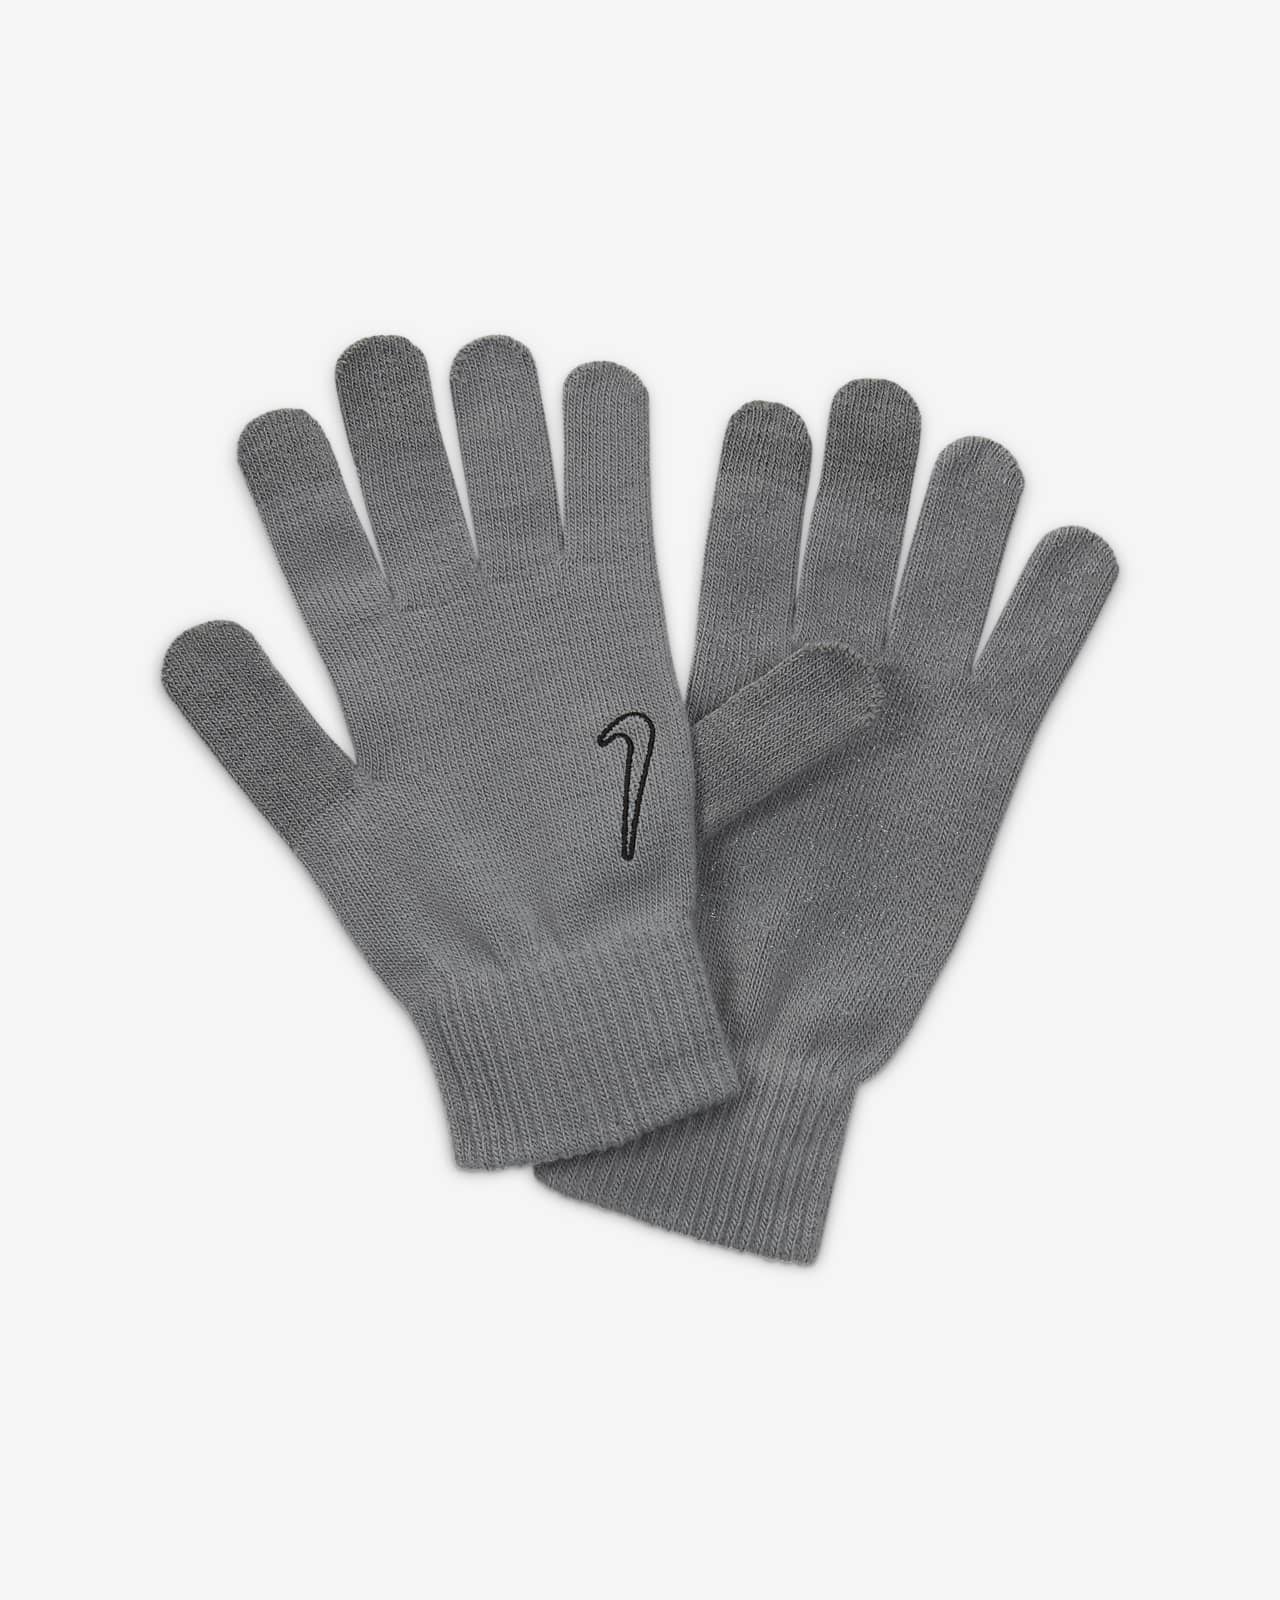 Nike Tech Grip Men's Training Gloves